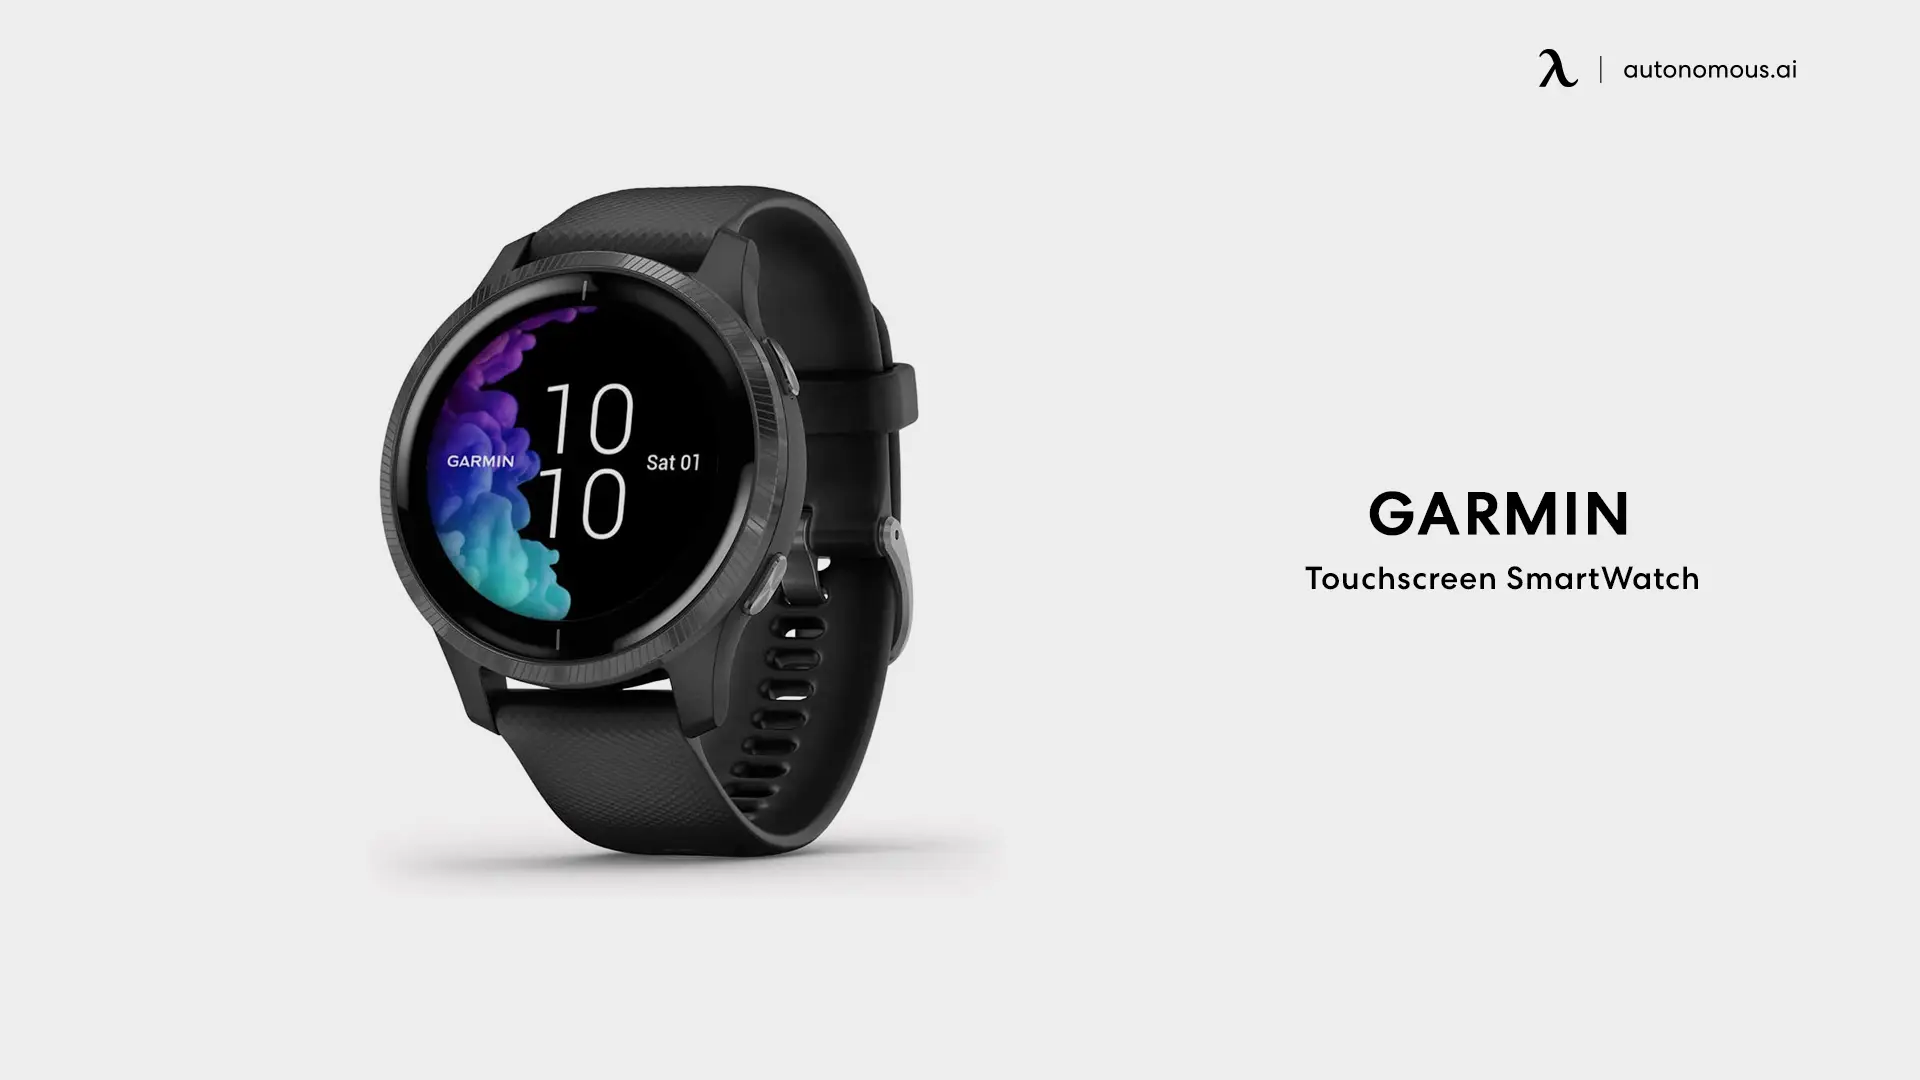 Garmin Touchscreen SmartWatch